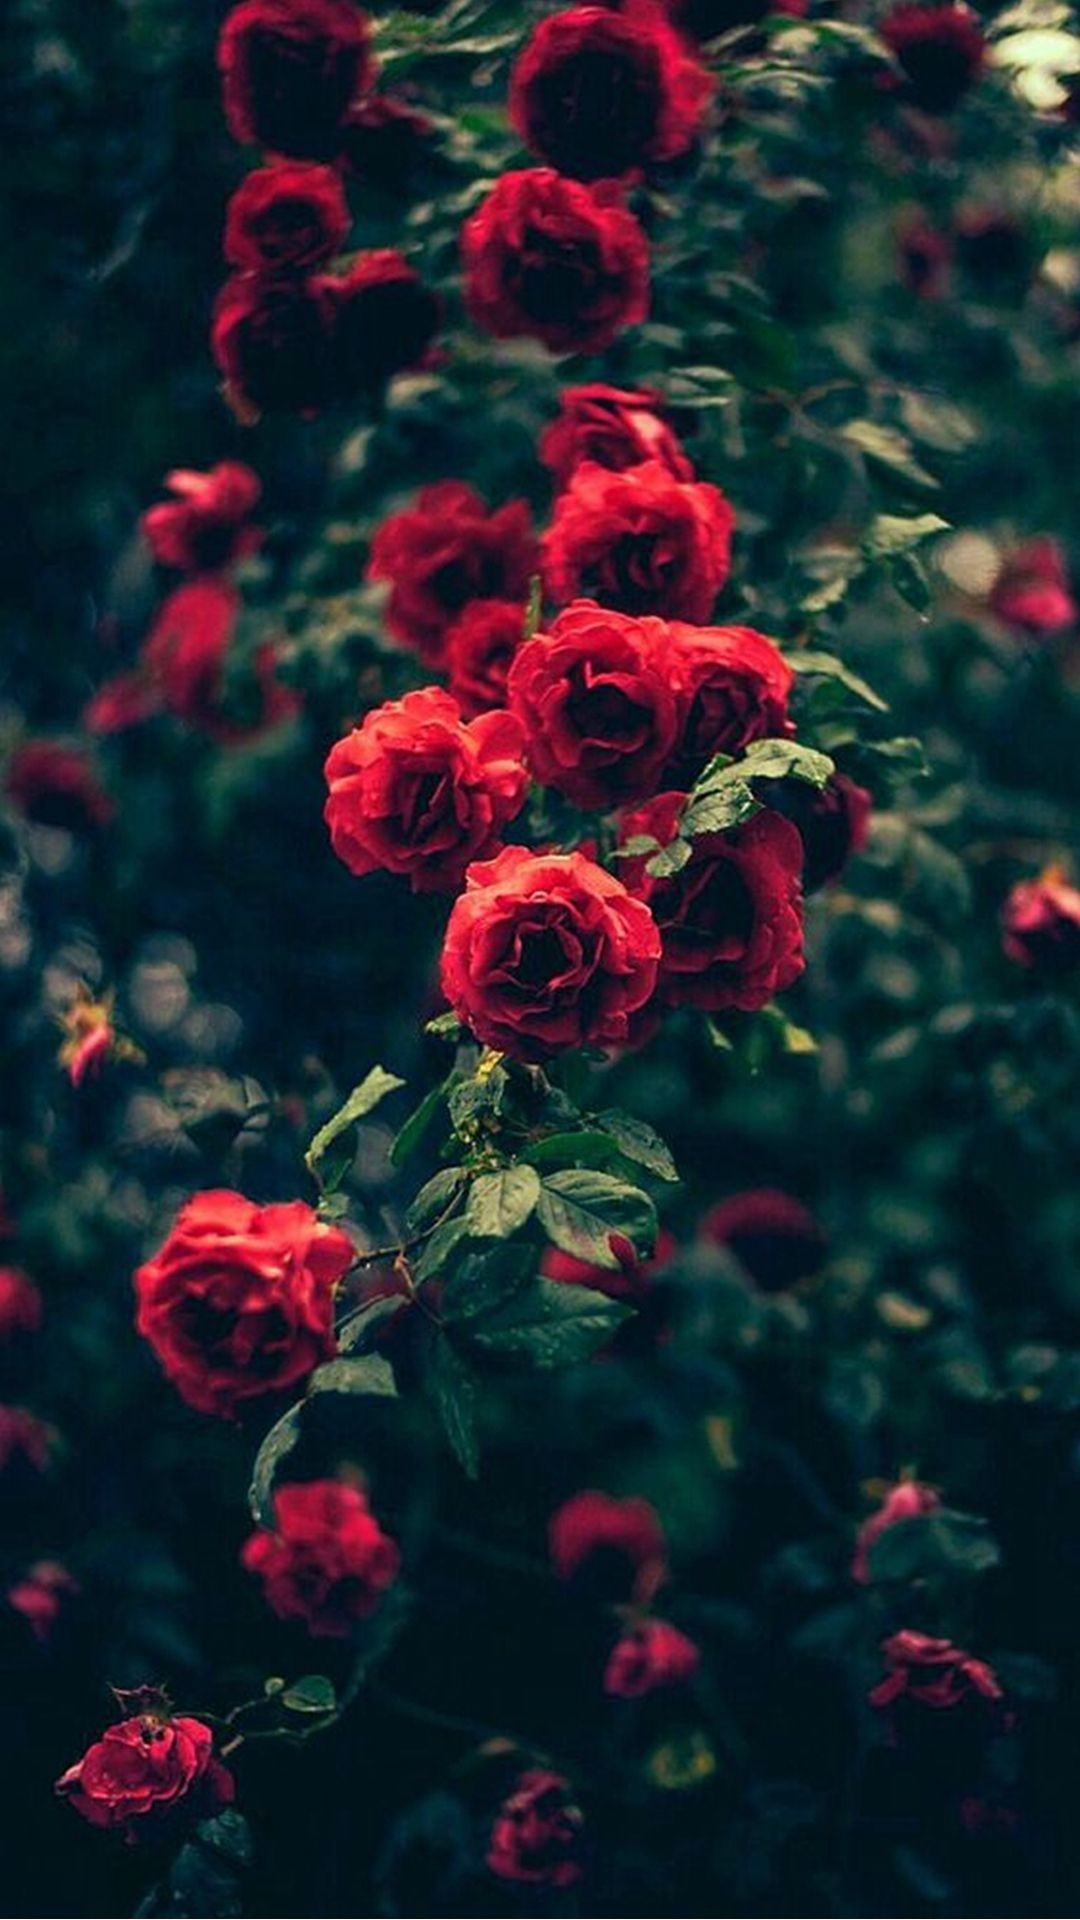 1080x1920  ÐÐ¾ÑÐ¾Ð¶ÐµÐµ Ð¸Ð·Ð¾Ð±ÑÐ°Ð¶ÐµÐ½Ð¸Ðµ | Ð¿ÑÐ¾ÑÑÐ¾ Ð½ÑÐ°Ð² â½â¡ | Pinterest | Red roses .